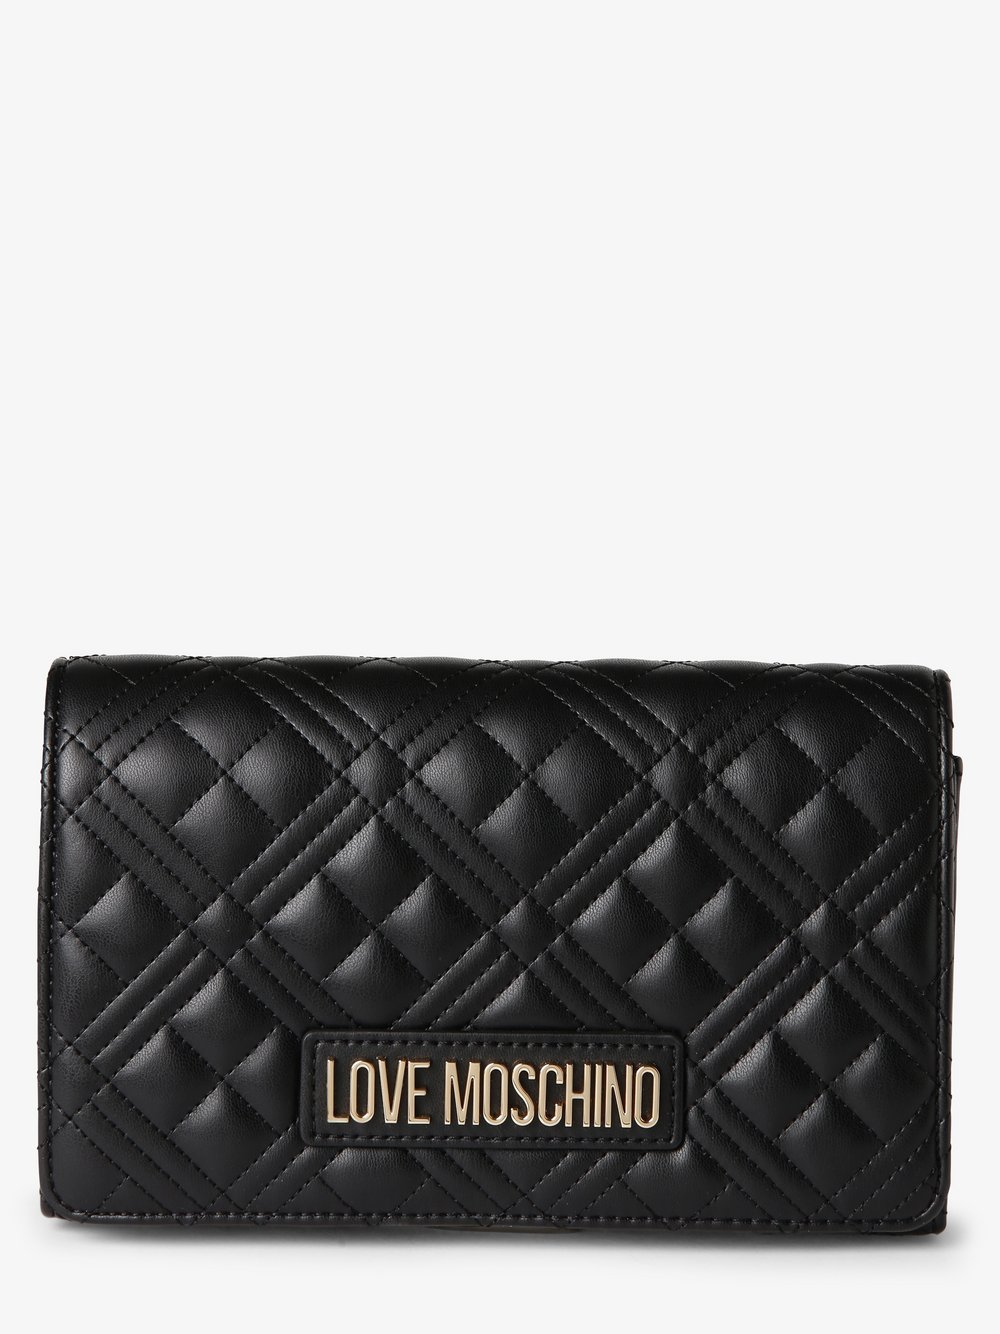 Love Moschino - Damska torebka na ramię – Borsa, czarny